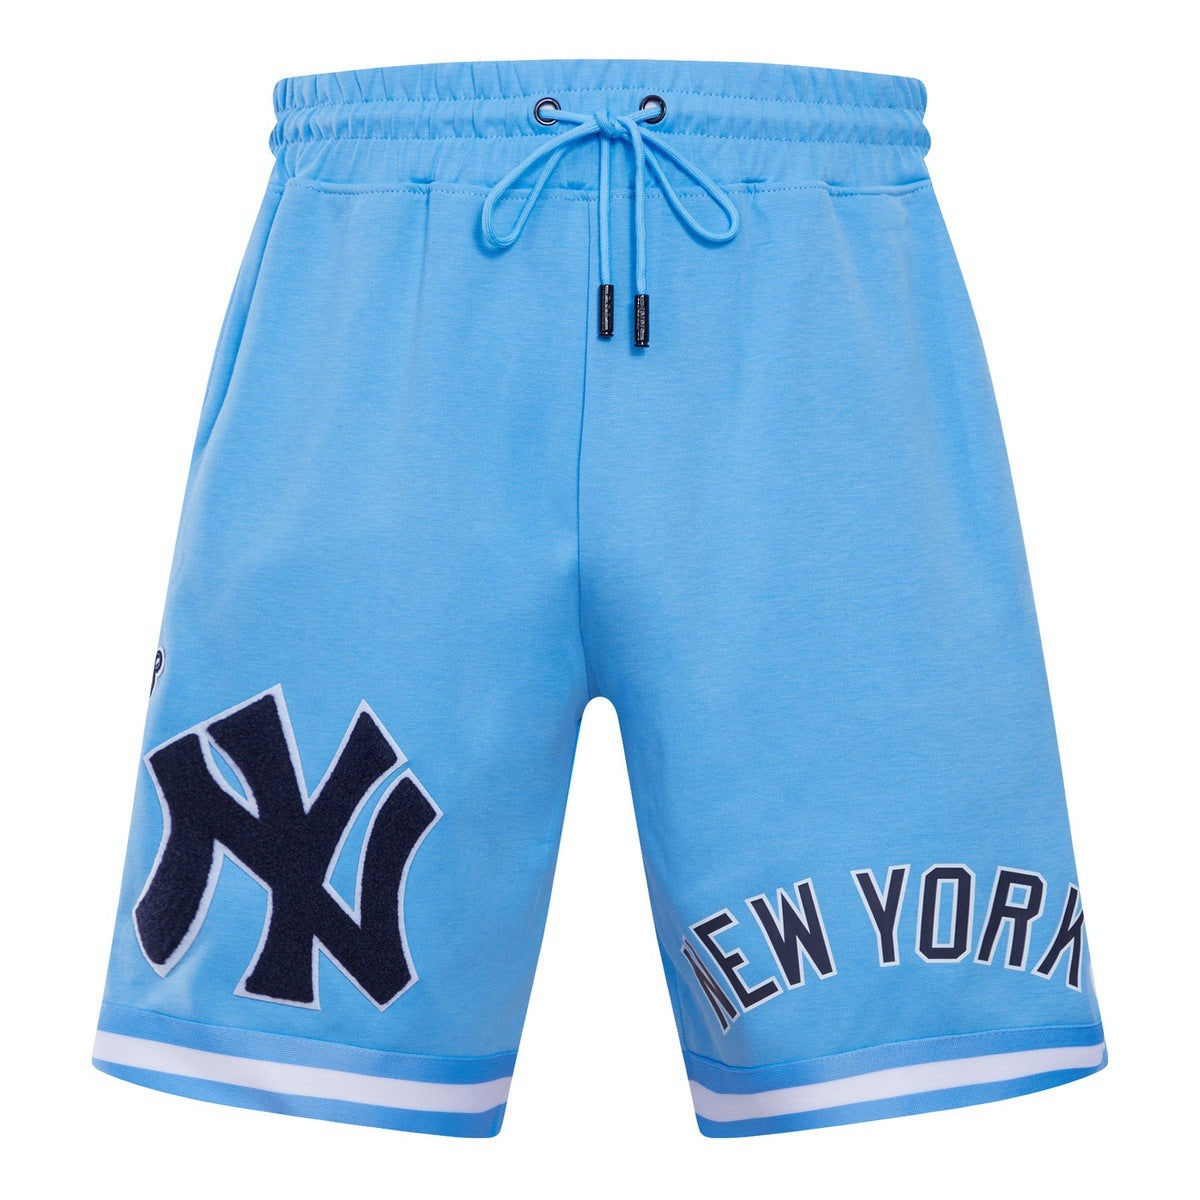 MLB NEW YORK YANKEES CLASSIC CHENILLE MEN'S SHORT (UNIVERSITY BLUE)